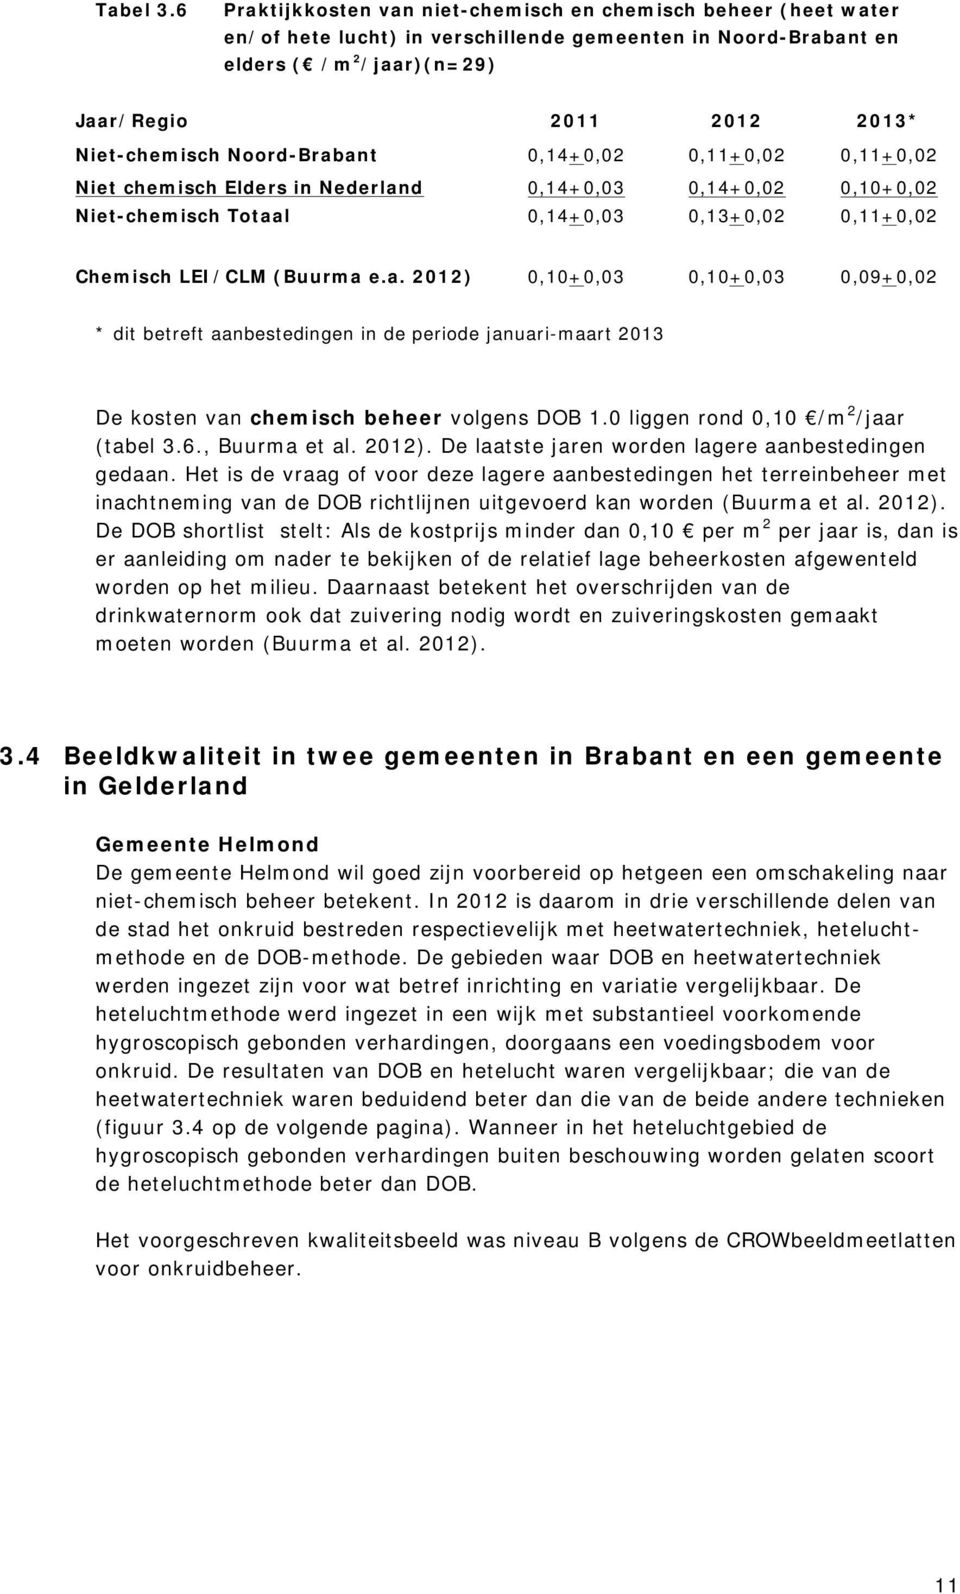 Noord-Brabant 0,14+0,02 0,11+0,02 0,11+0,02 Niet chemisch Elders in Nederland 0,14+0,03 0,14+0,02 0,10+0,02 Niet-chemisch Totaal 0,14+0,03 0,13+0,02 0,11+0,02 Chemisch LEI/CLM (Buurma e.a. 2012) 0,10+0,03 0,10+0,03 0,09+0,02 * dit betreft aanbestedingen in de periode januari-maart 2013 De kosten van chemisch beheer volgens DOB 1.